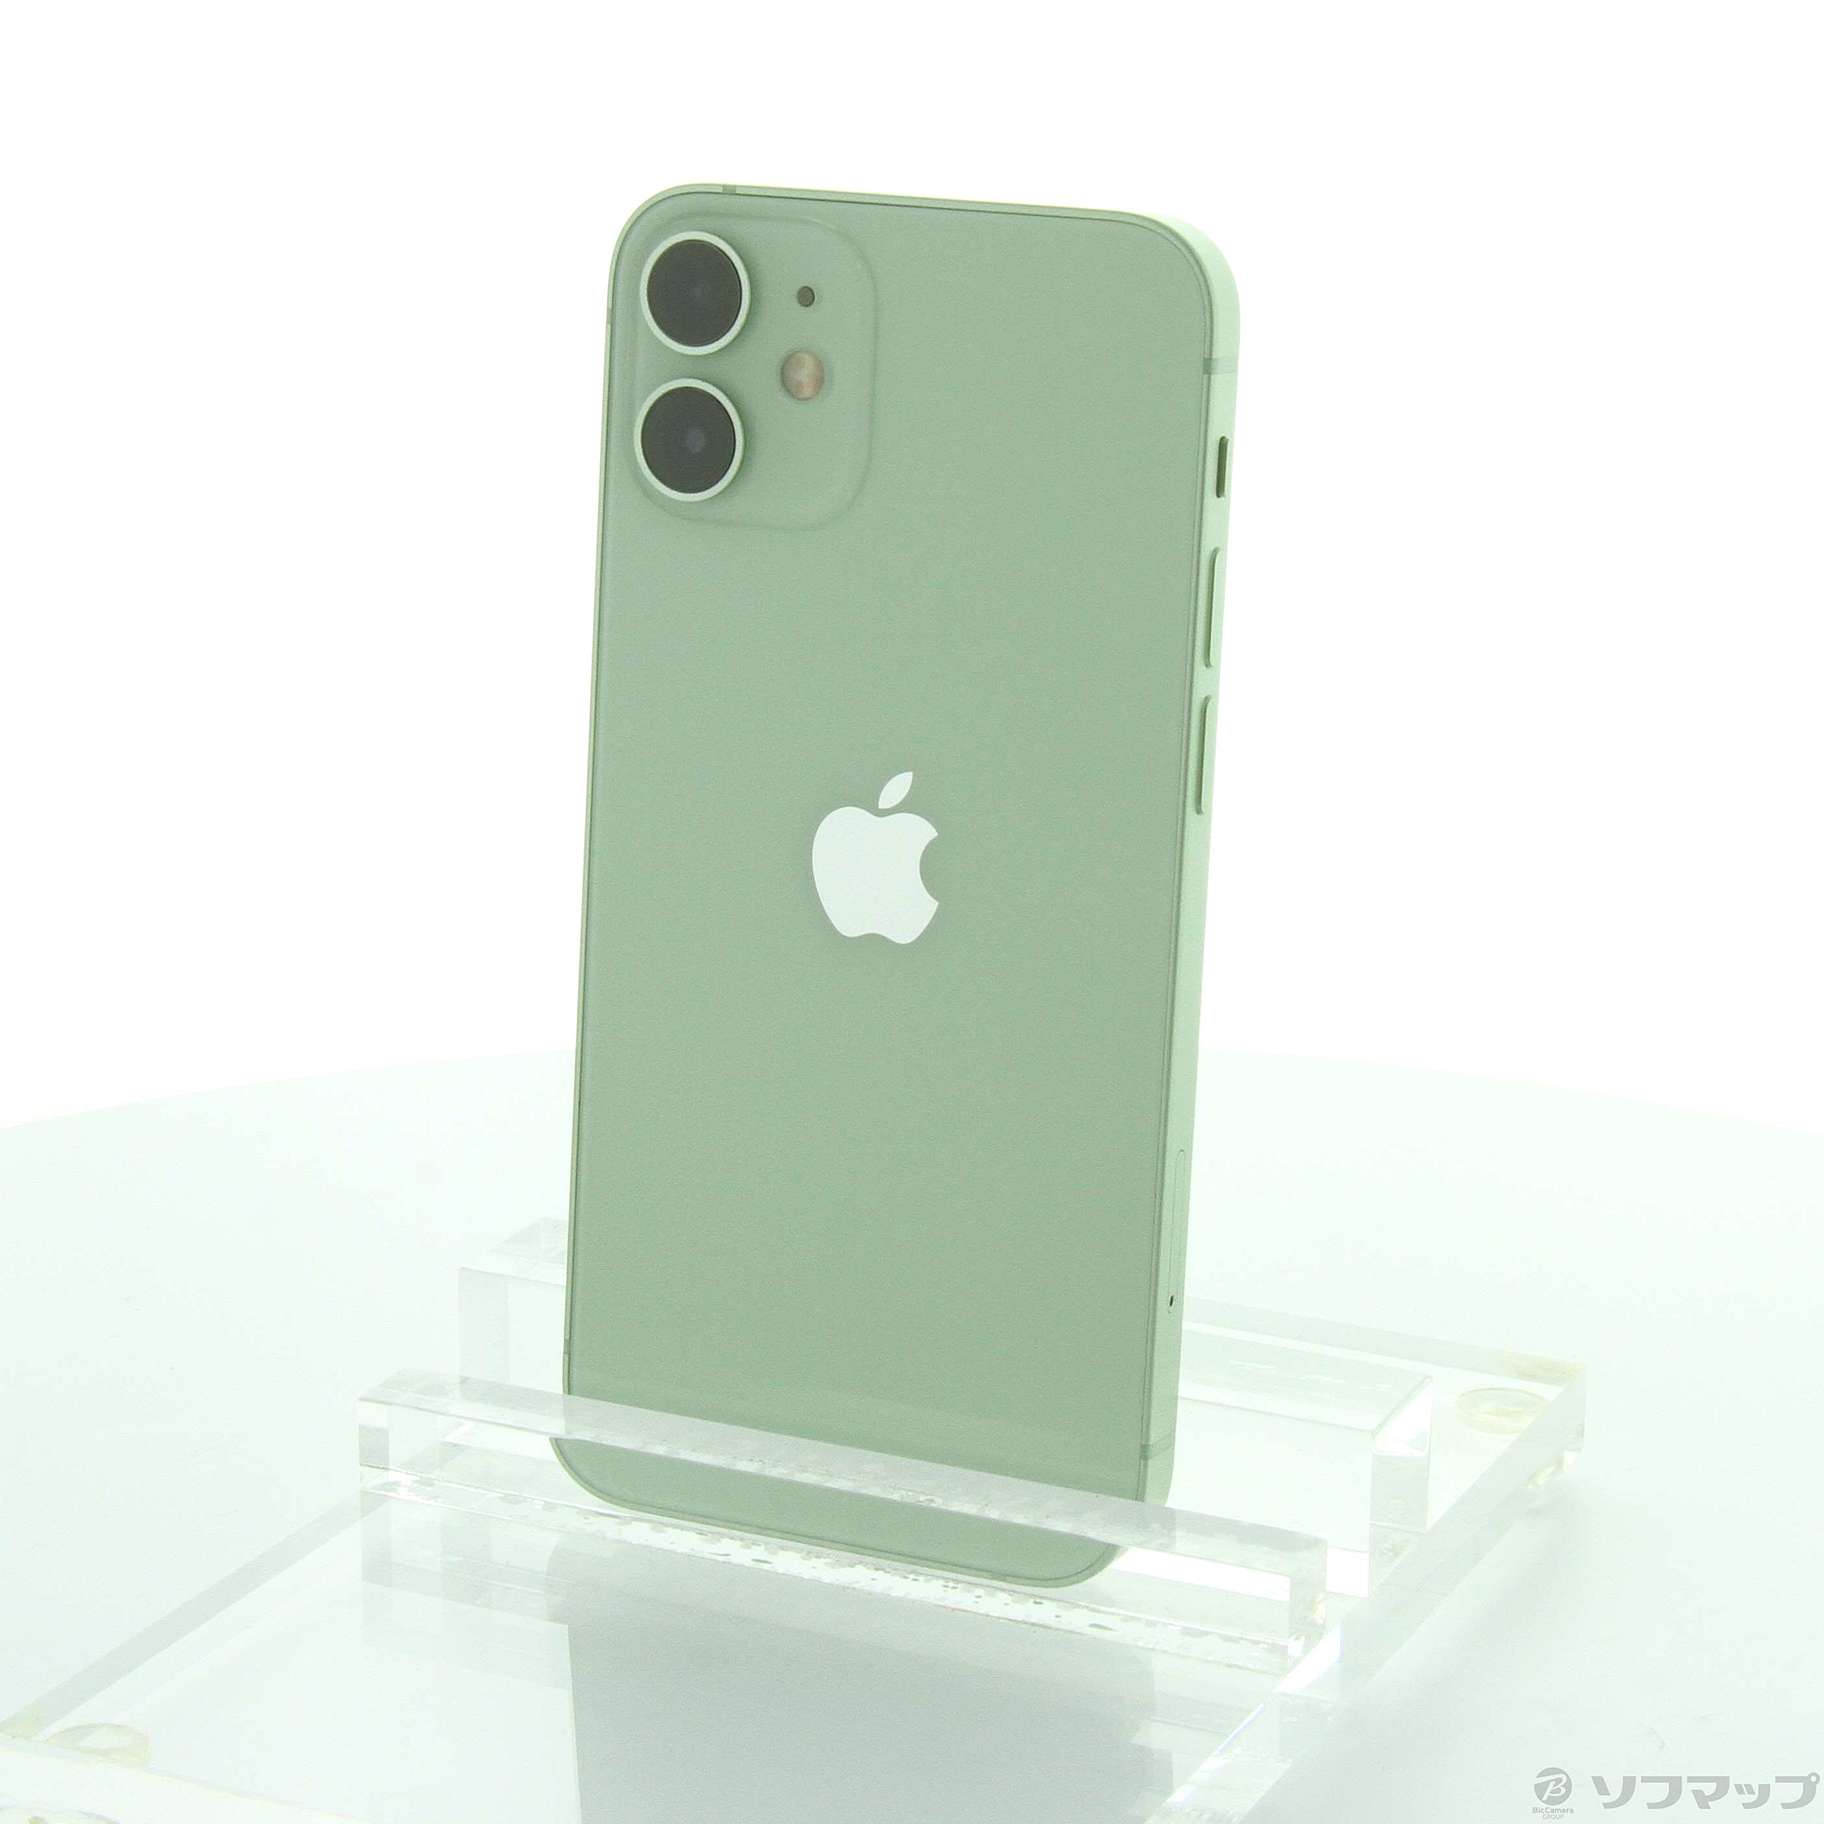 iPhone12 mini 64GB SIMフリー MGAV3J/A グリーン - tsm.ac.in